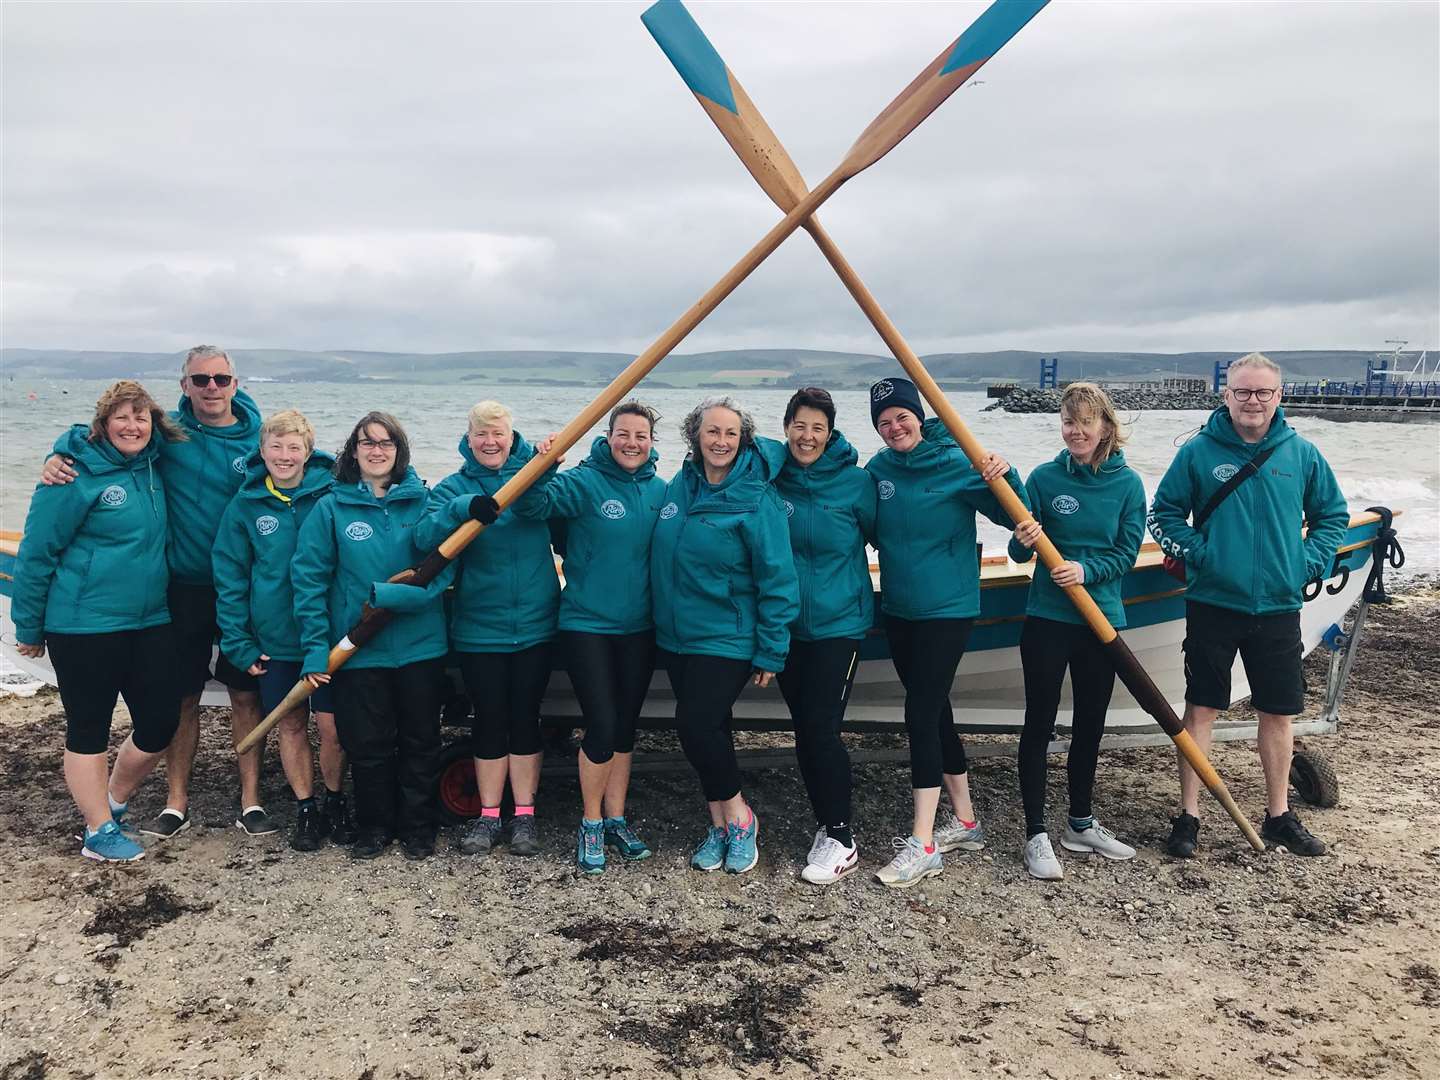 Burghead Coastal Rowing Club members.